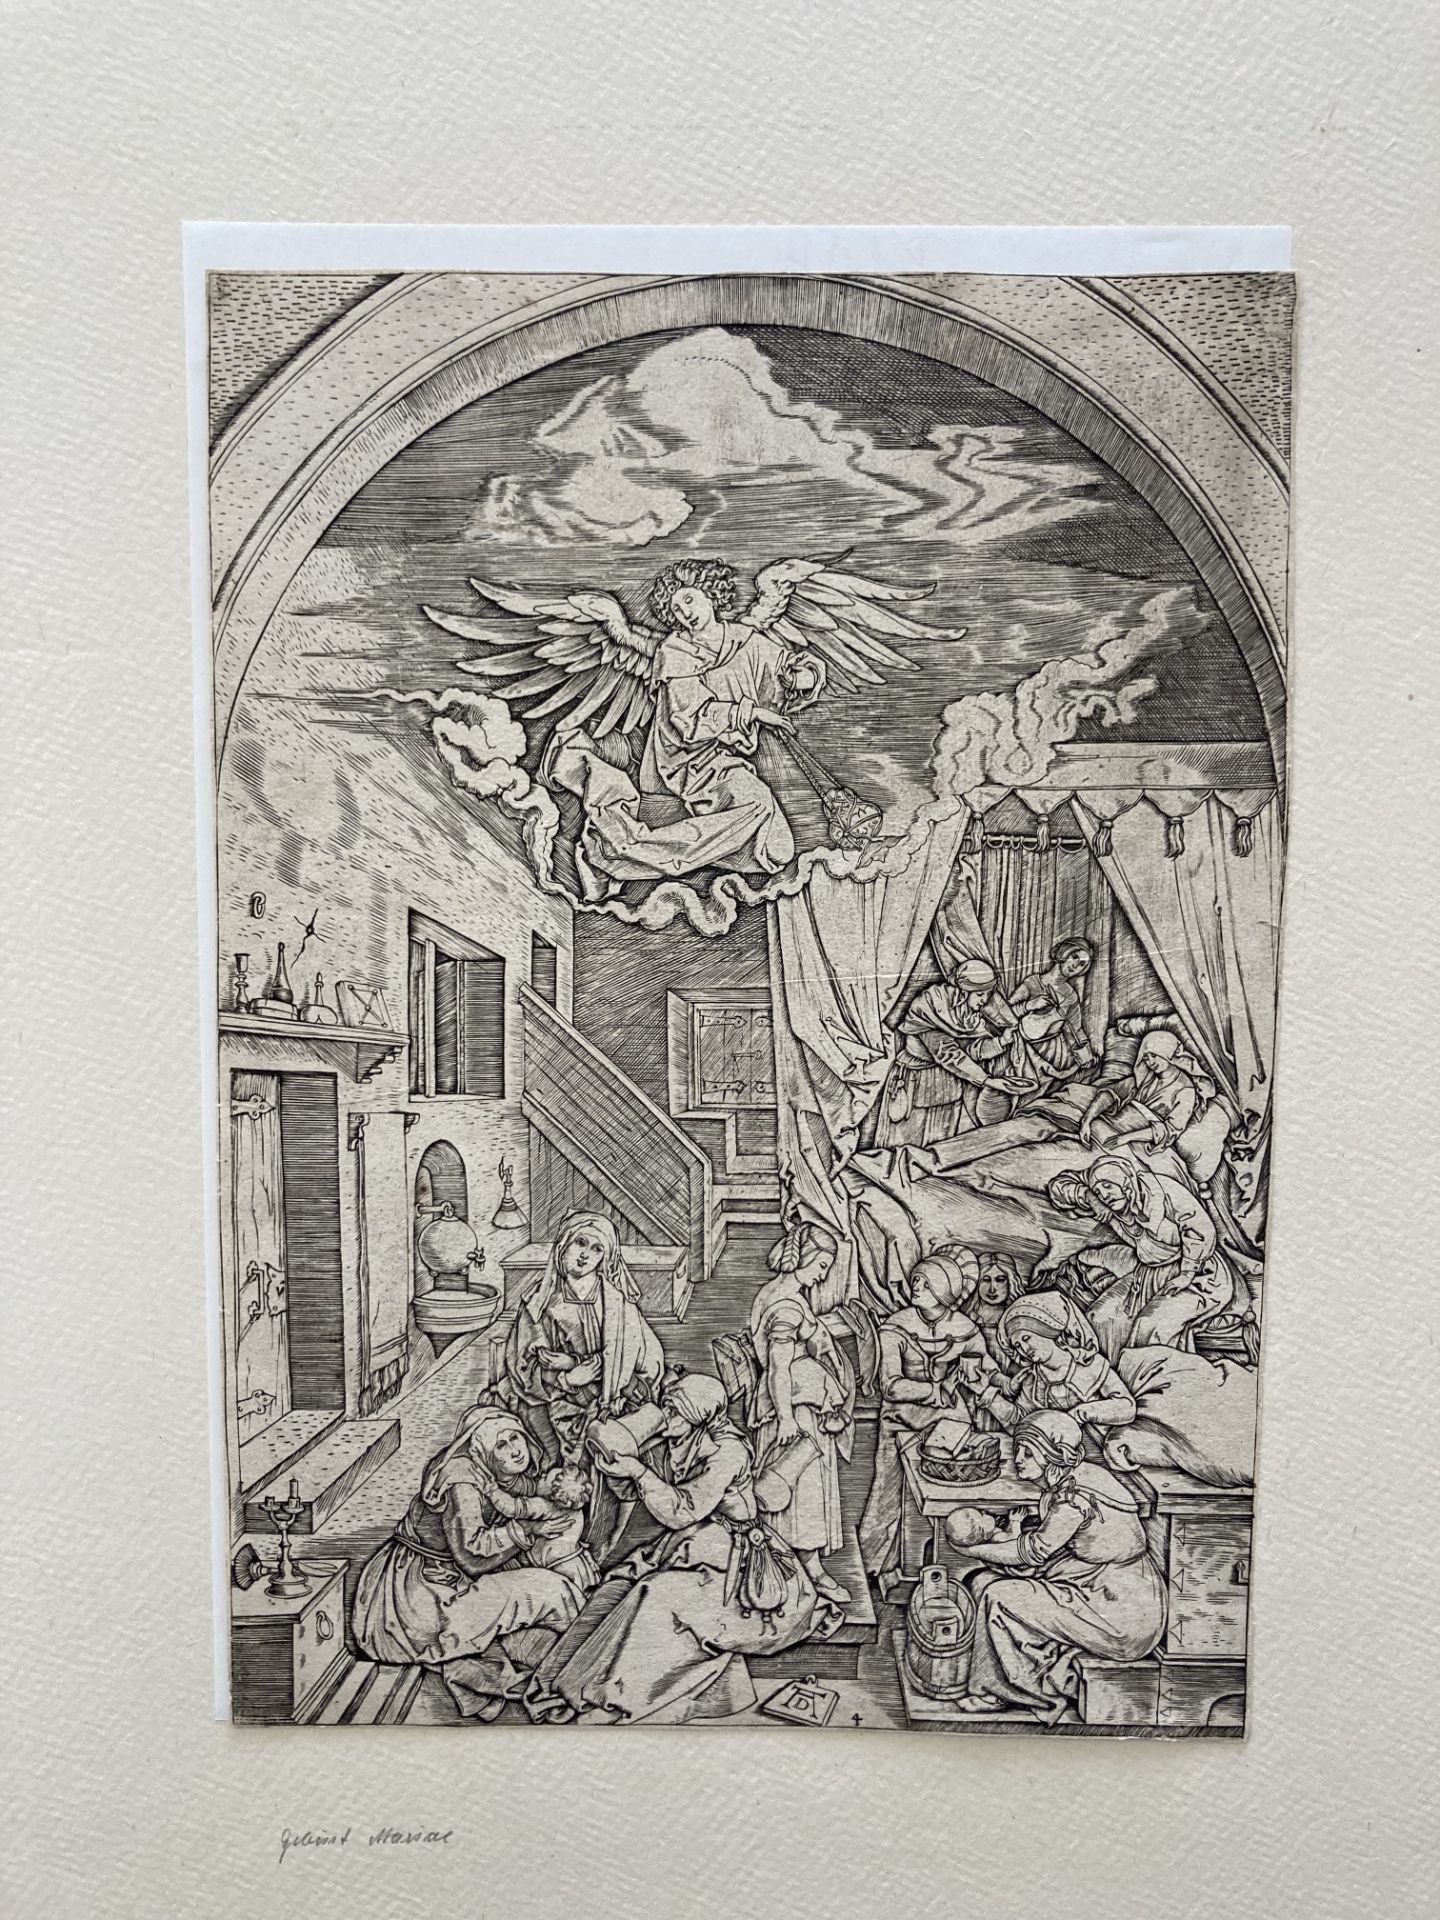 Marcantonio Raimondi ca. 1480 Molinella - 1534 Bologna: Life of the Virgin - Image 17 of 20